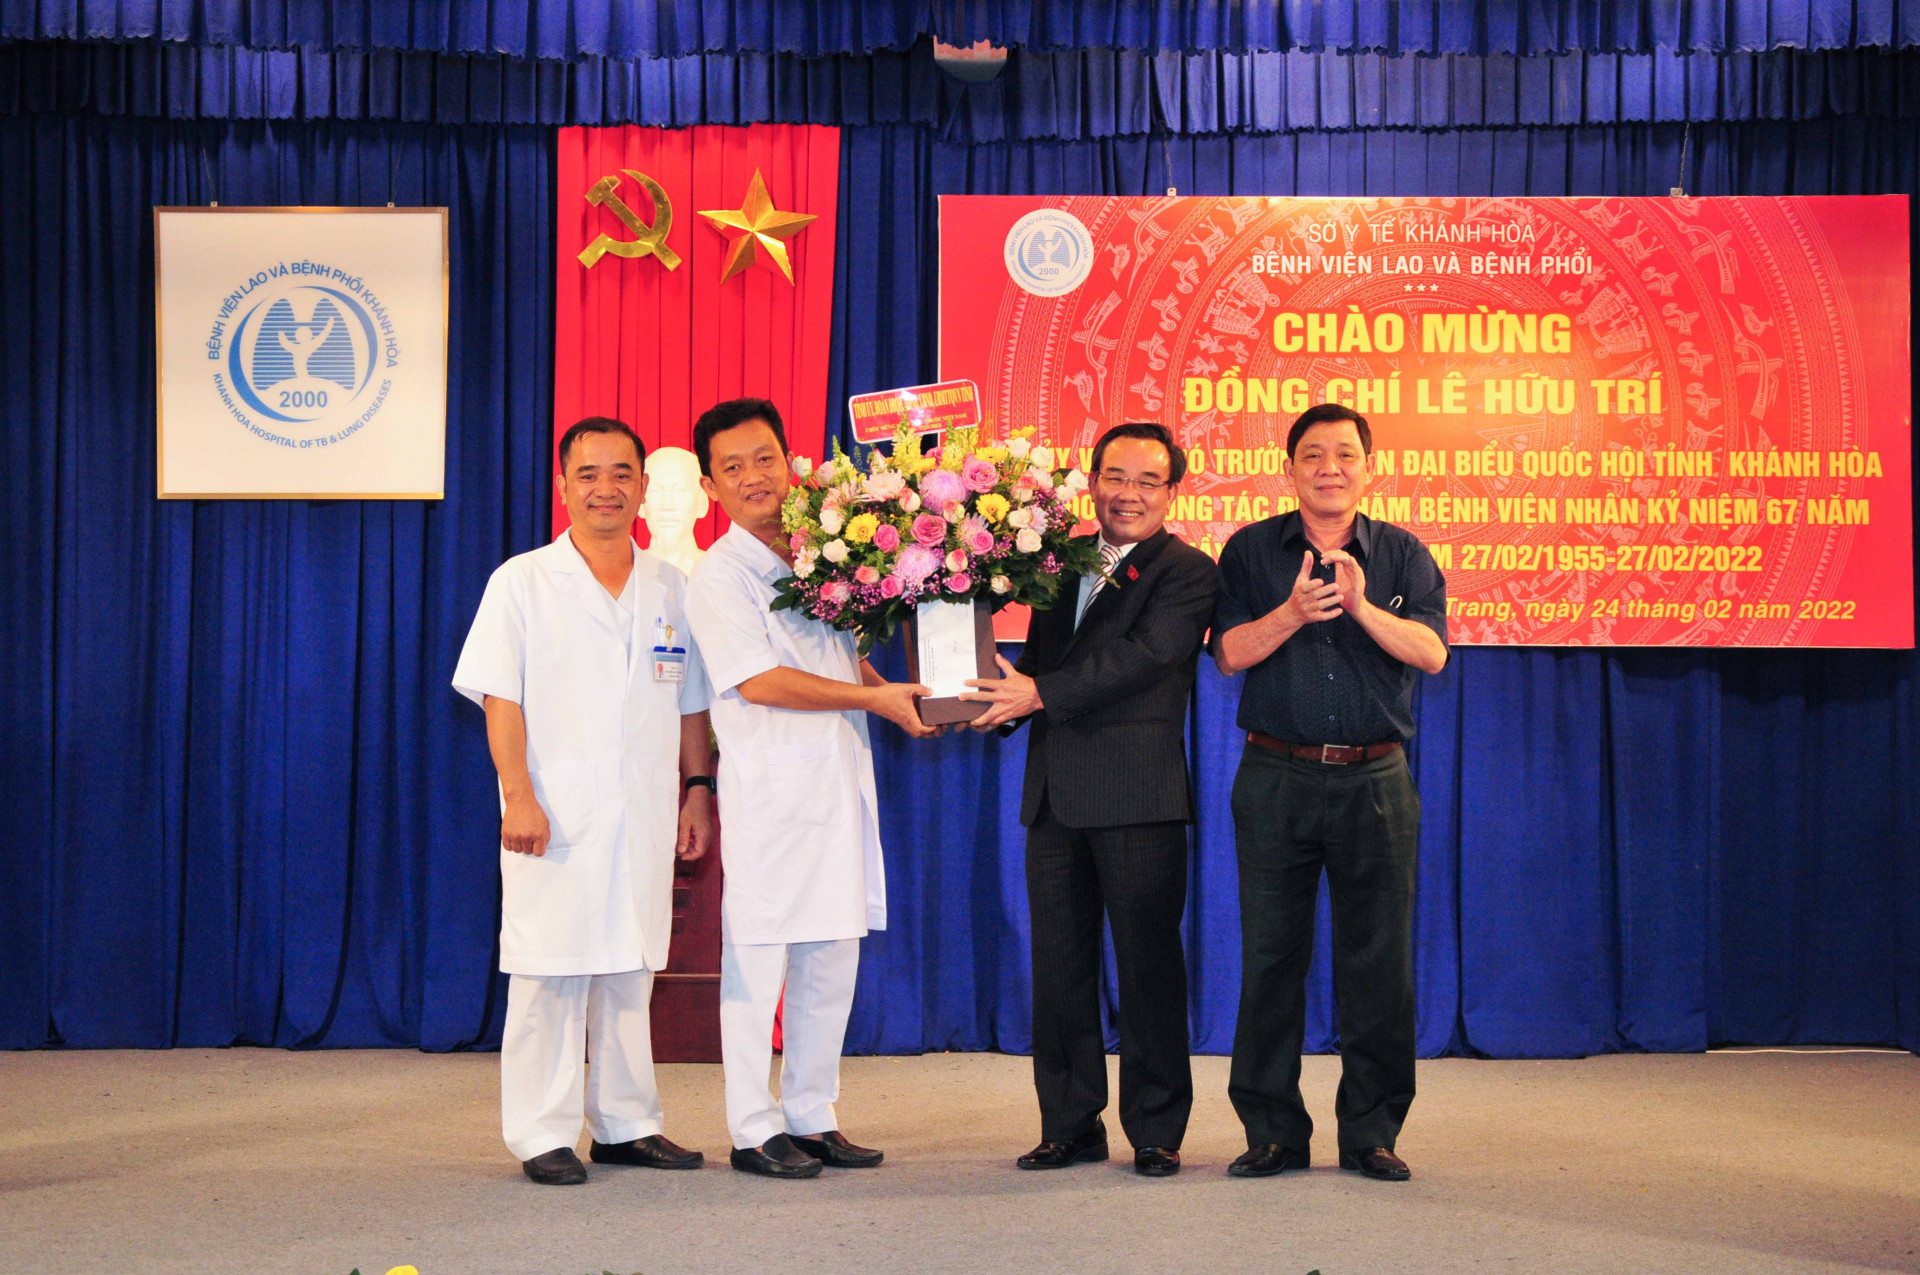 Đồng chí Lê Hữu Trí tặng hoa và quà cho lãnh đạo Bệnh viện Lao và Bệnh Phổi tỉnh